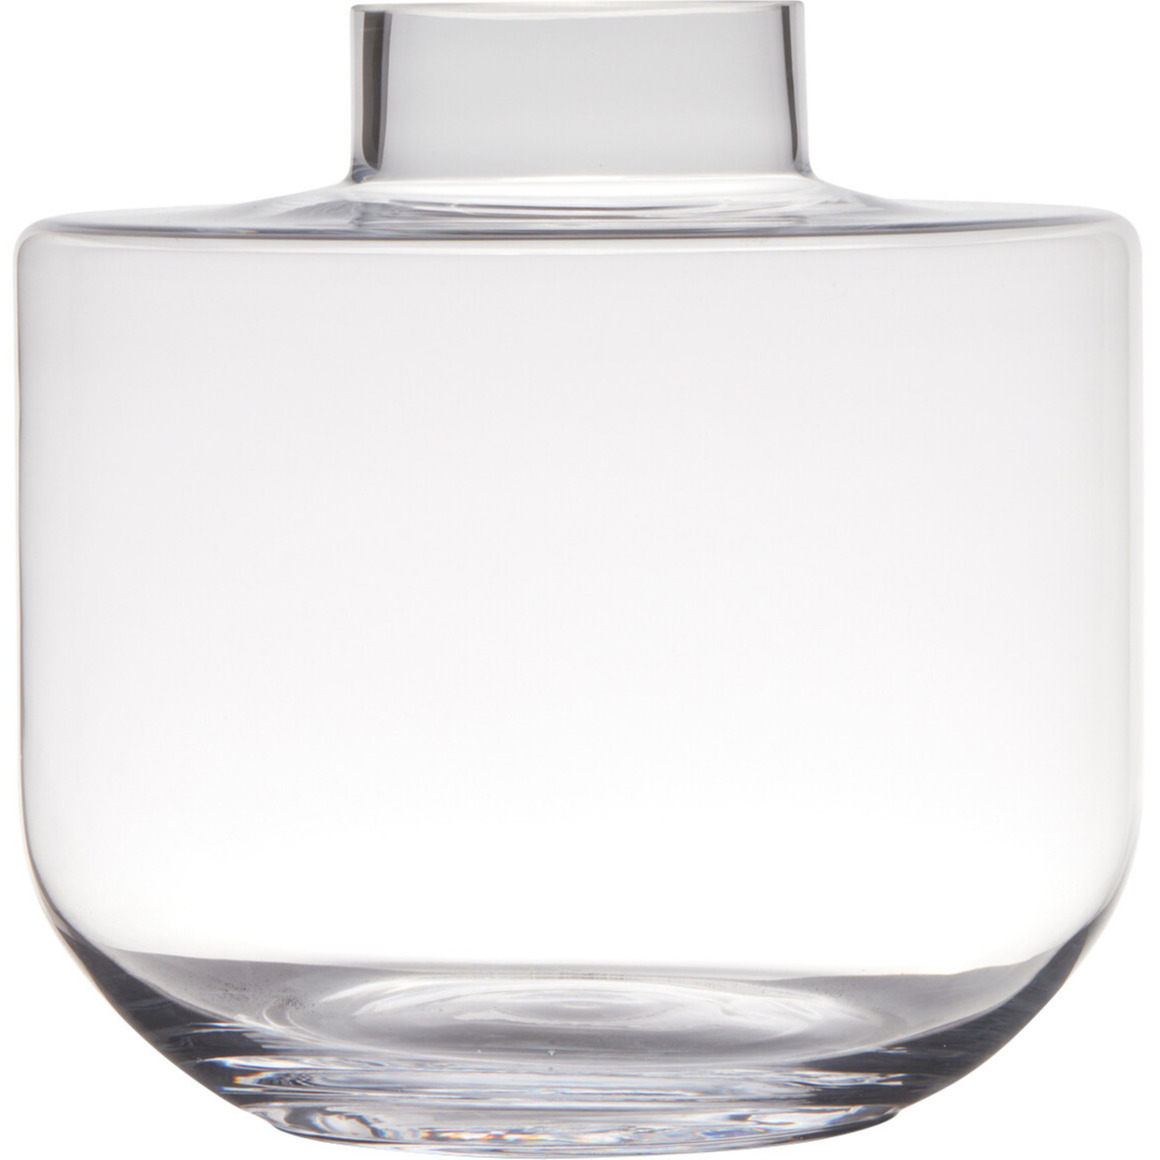 Transparante luxe grote vaas-vazen van glas 25 x 26 cm